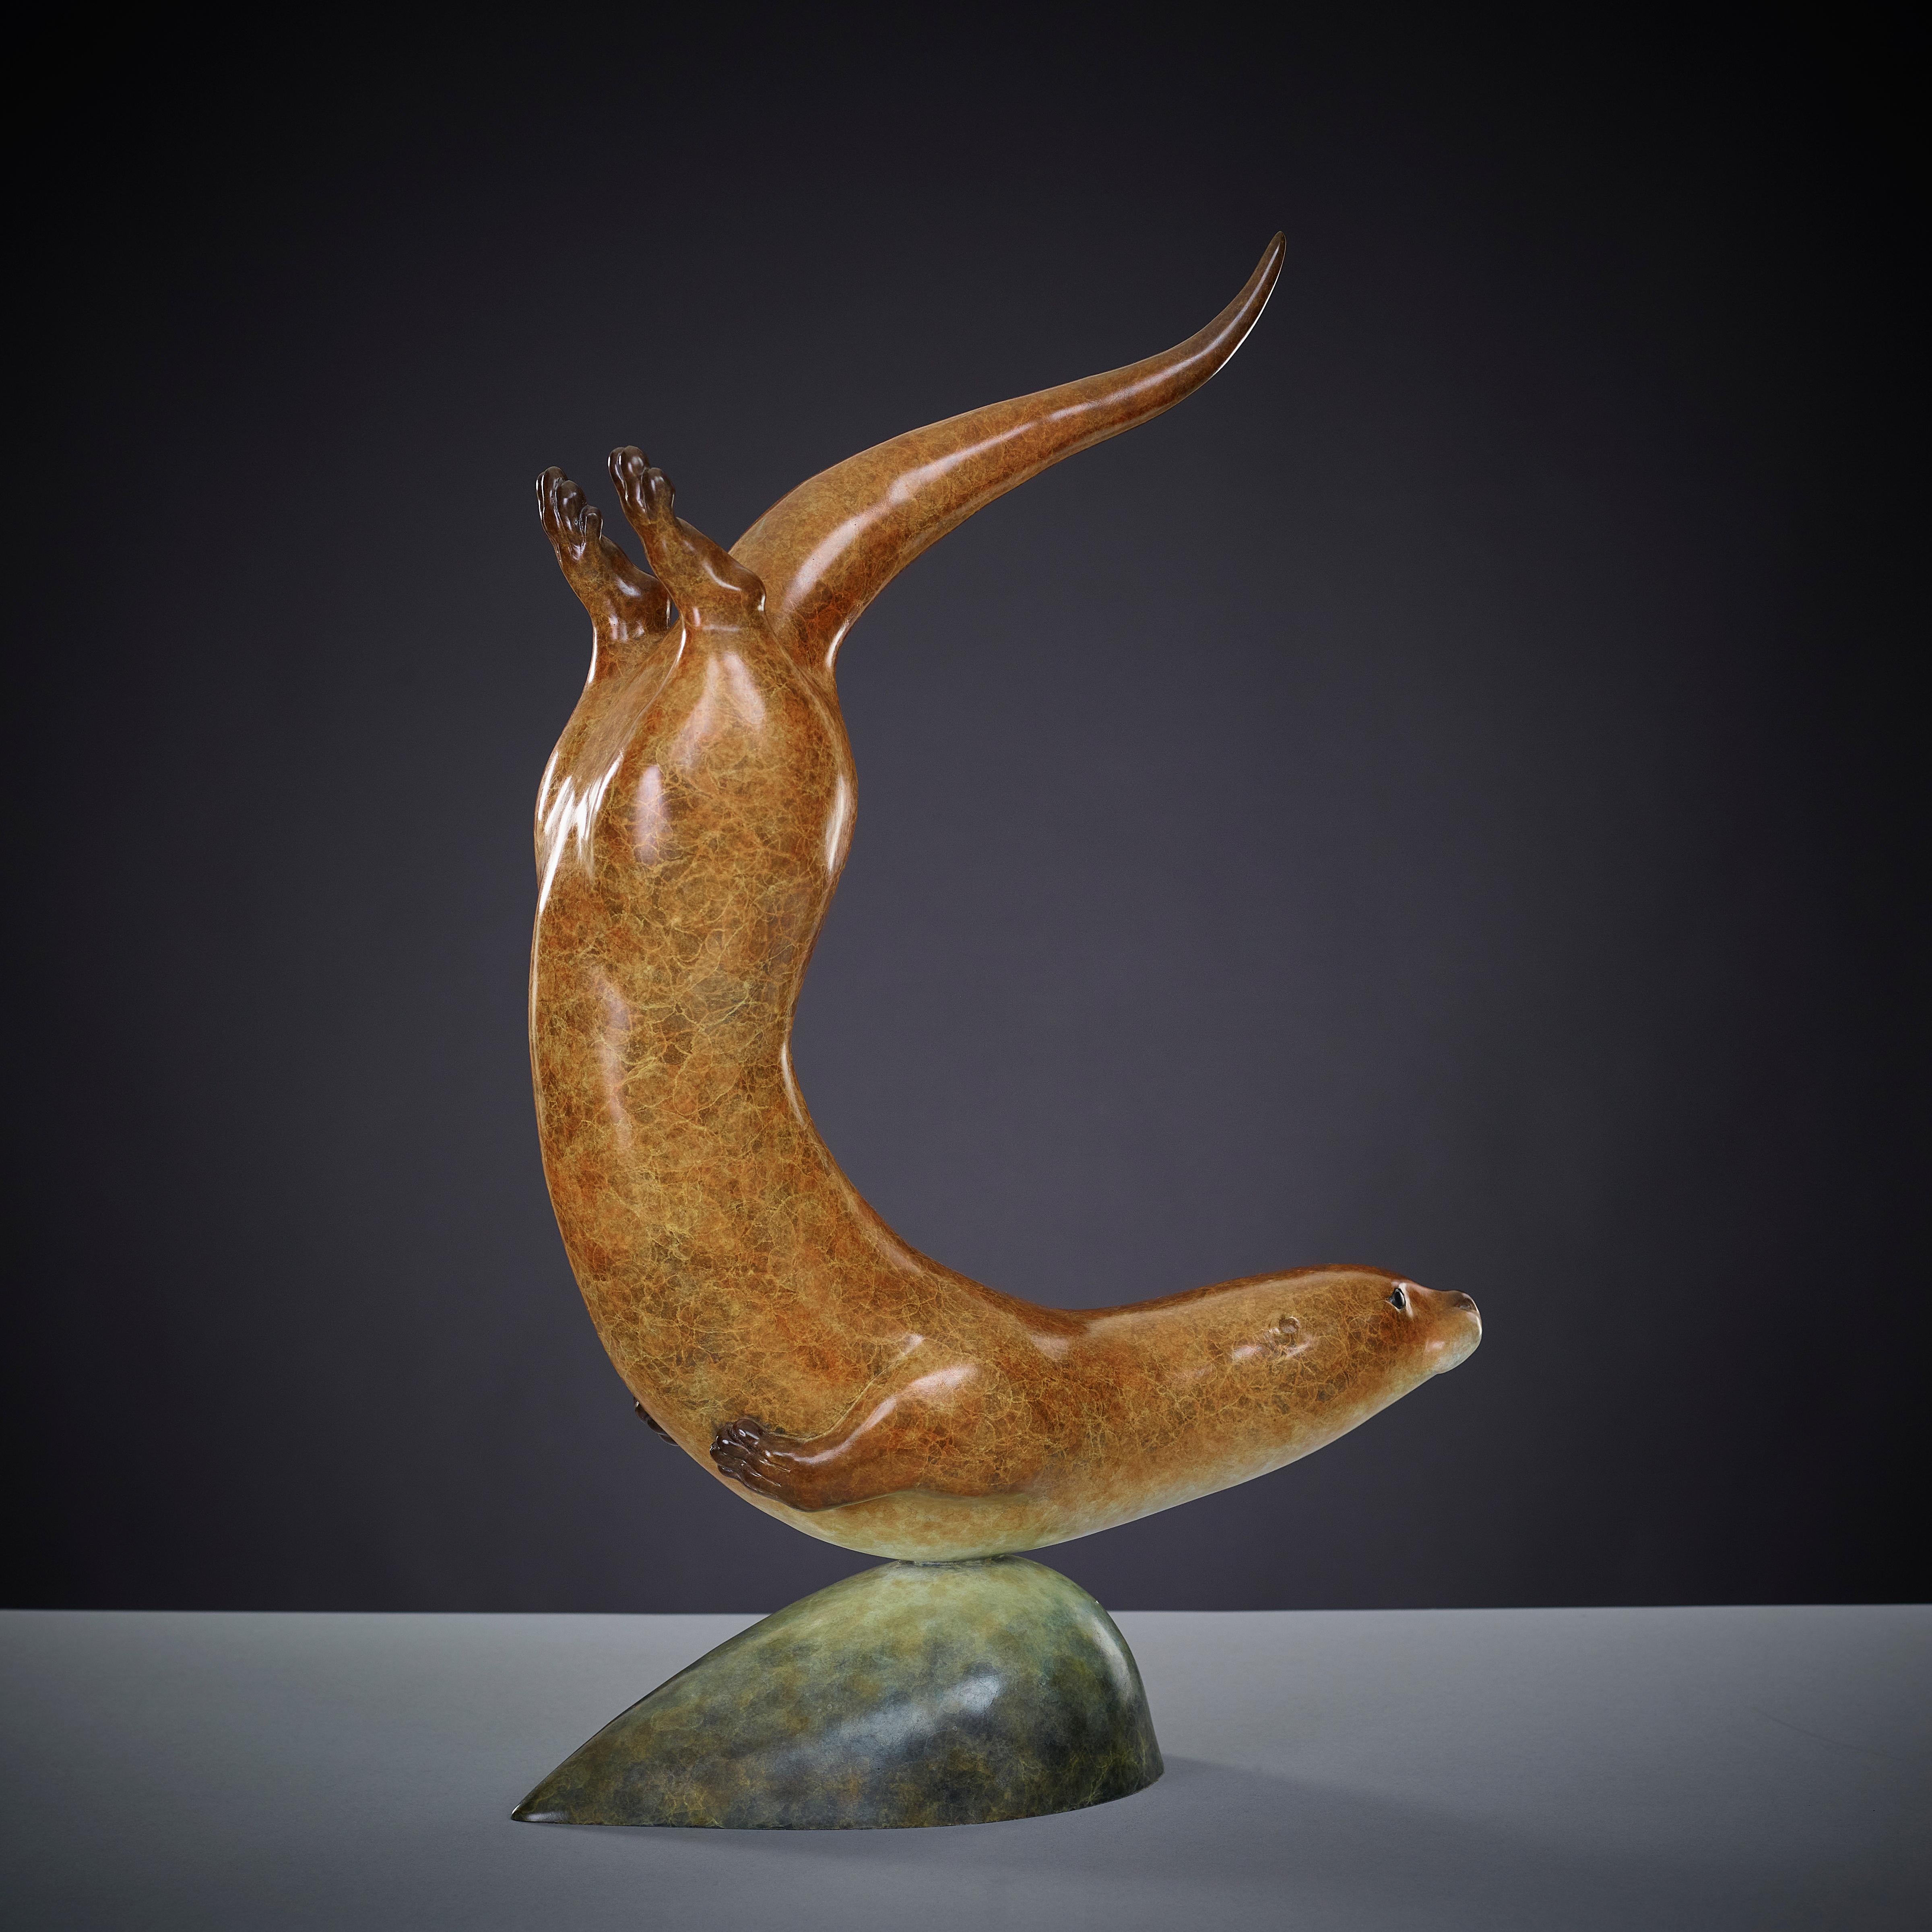 la "loutre à la poursuite" est une sculpture en bronze d'une élégance étonnante. Richard Smith transmet tant de caractère dans des lignes si simples, illustrant un talent vraiment merveilleux. La fantastique patine brune graduée richement détaillée